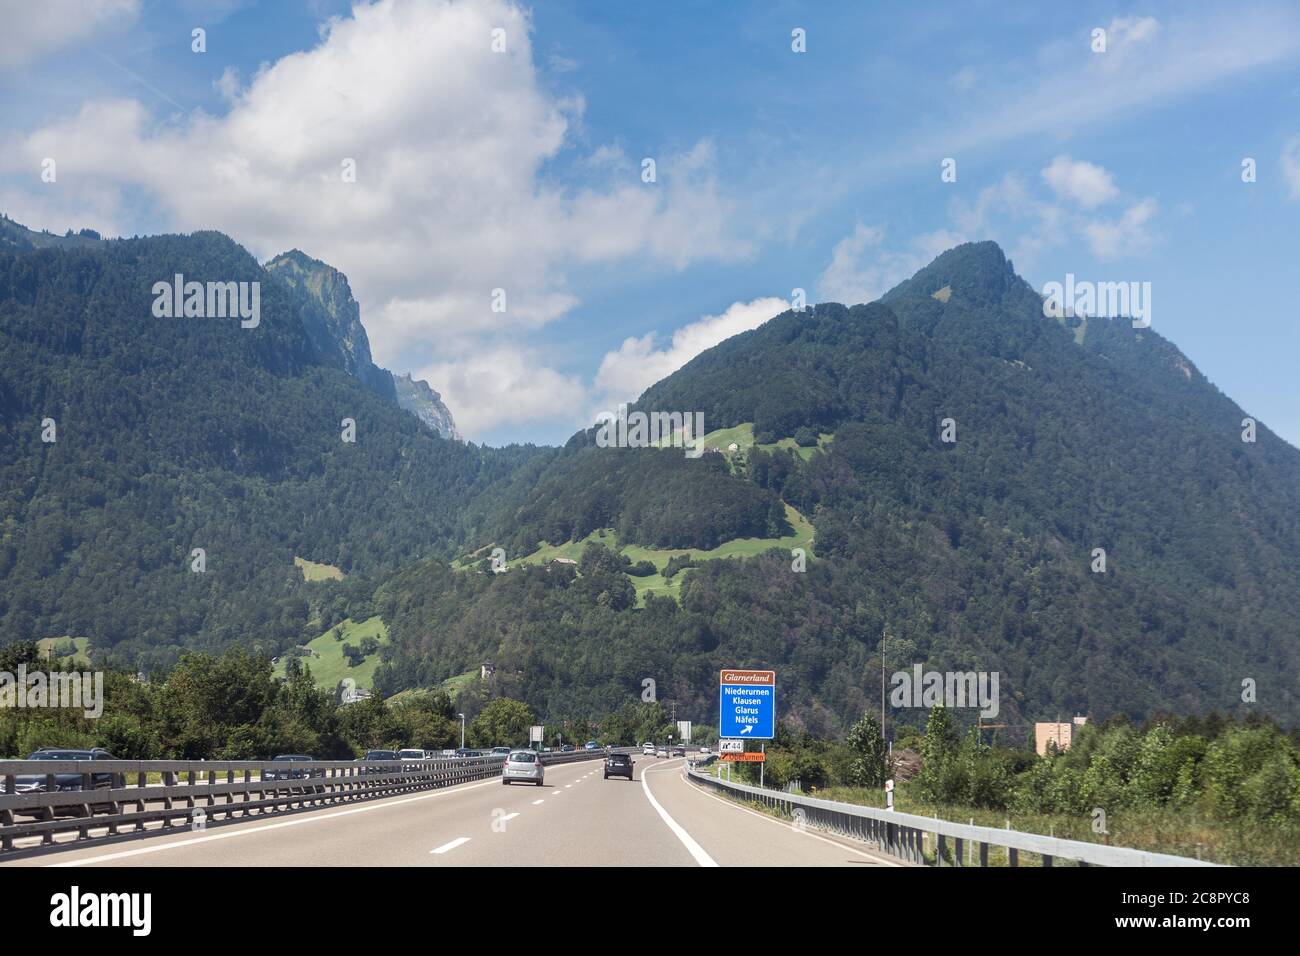 Autoroute route suisse dans les montagnes des Alpes, Suisse Banque D'Images